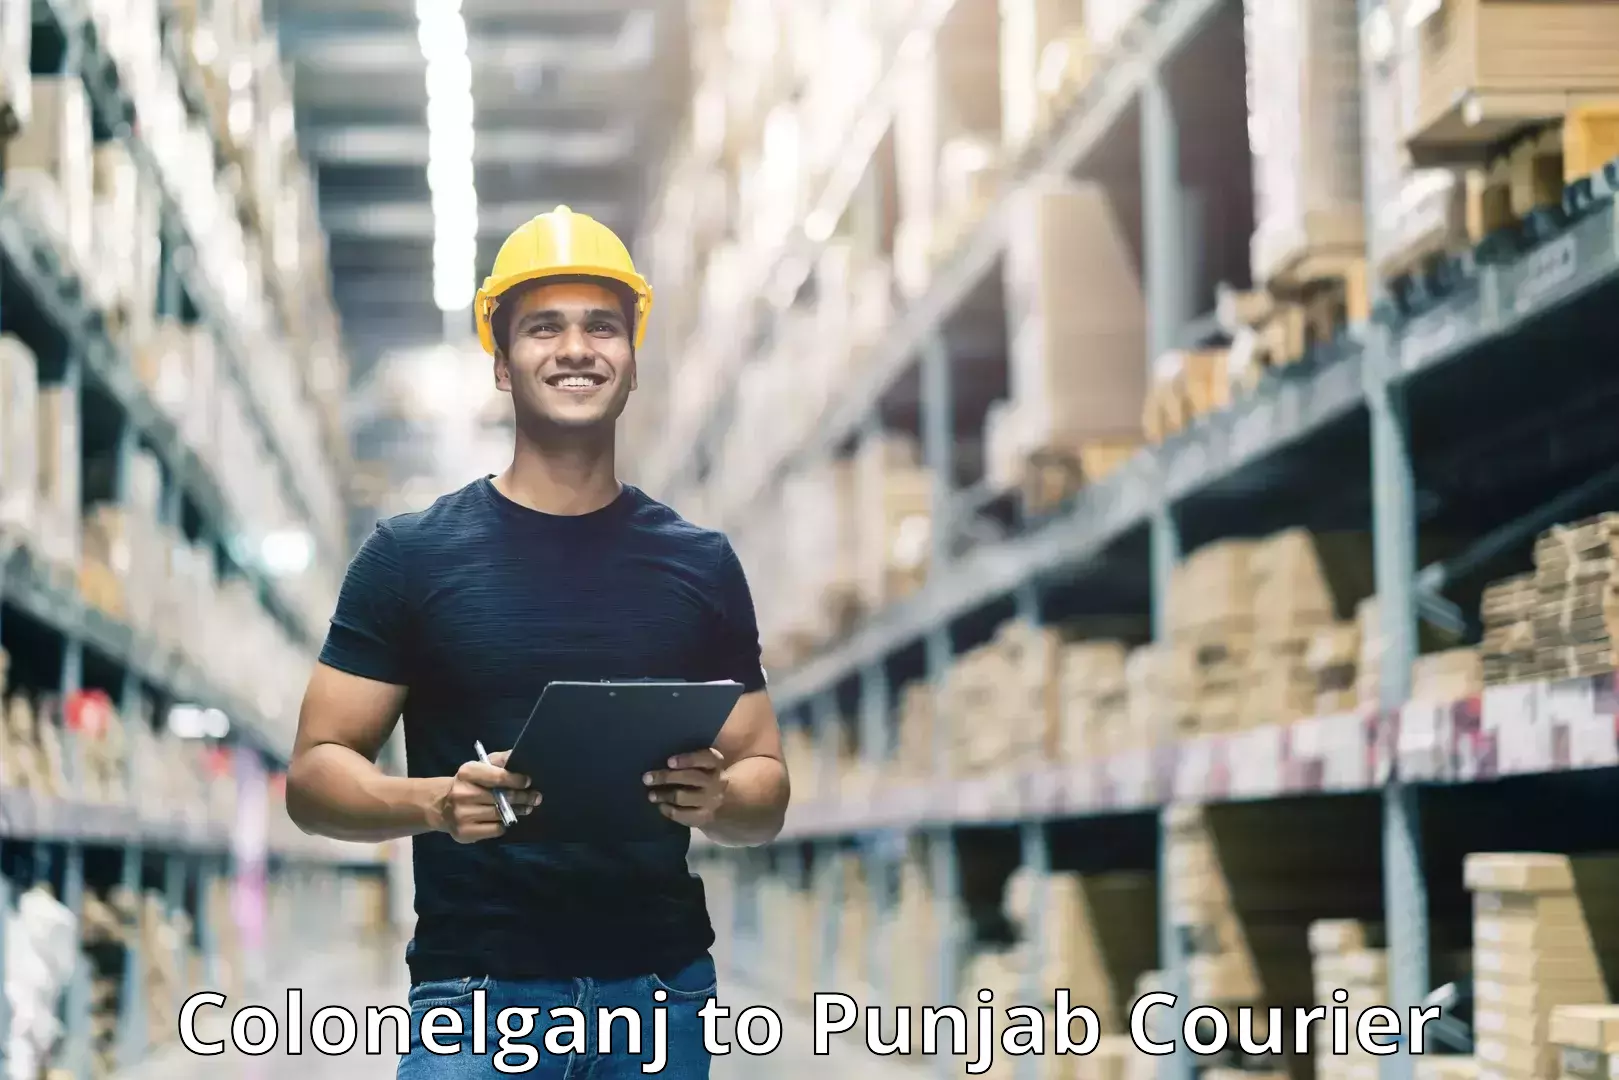 E-commerce shipping Colonelganj to Central University of Punjab Bathinda